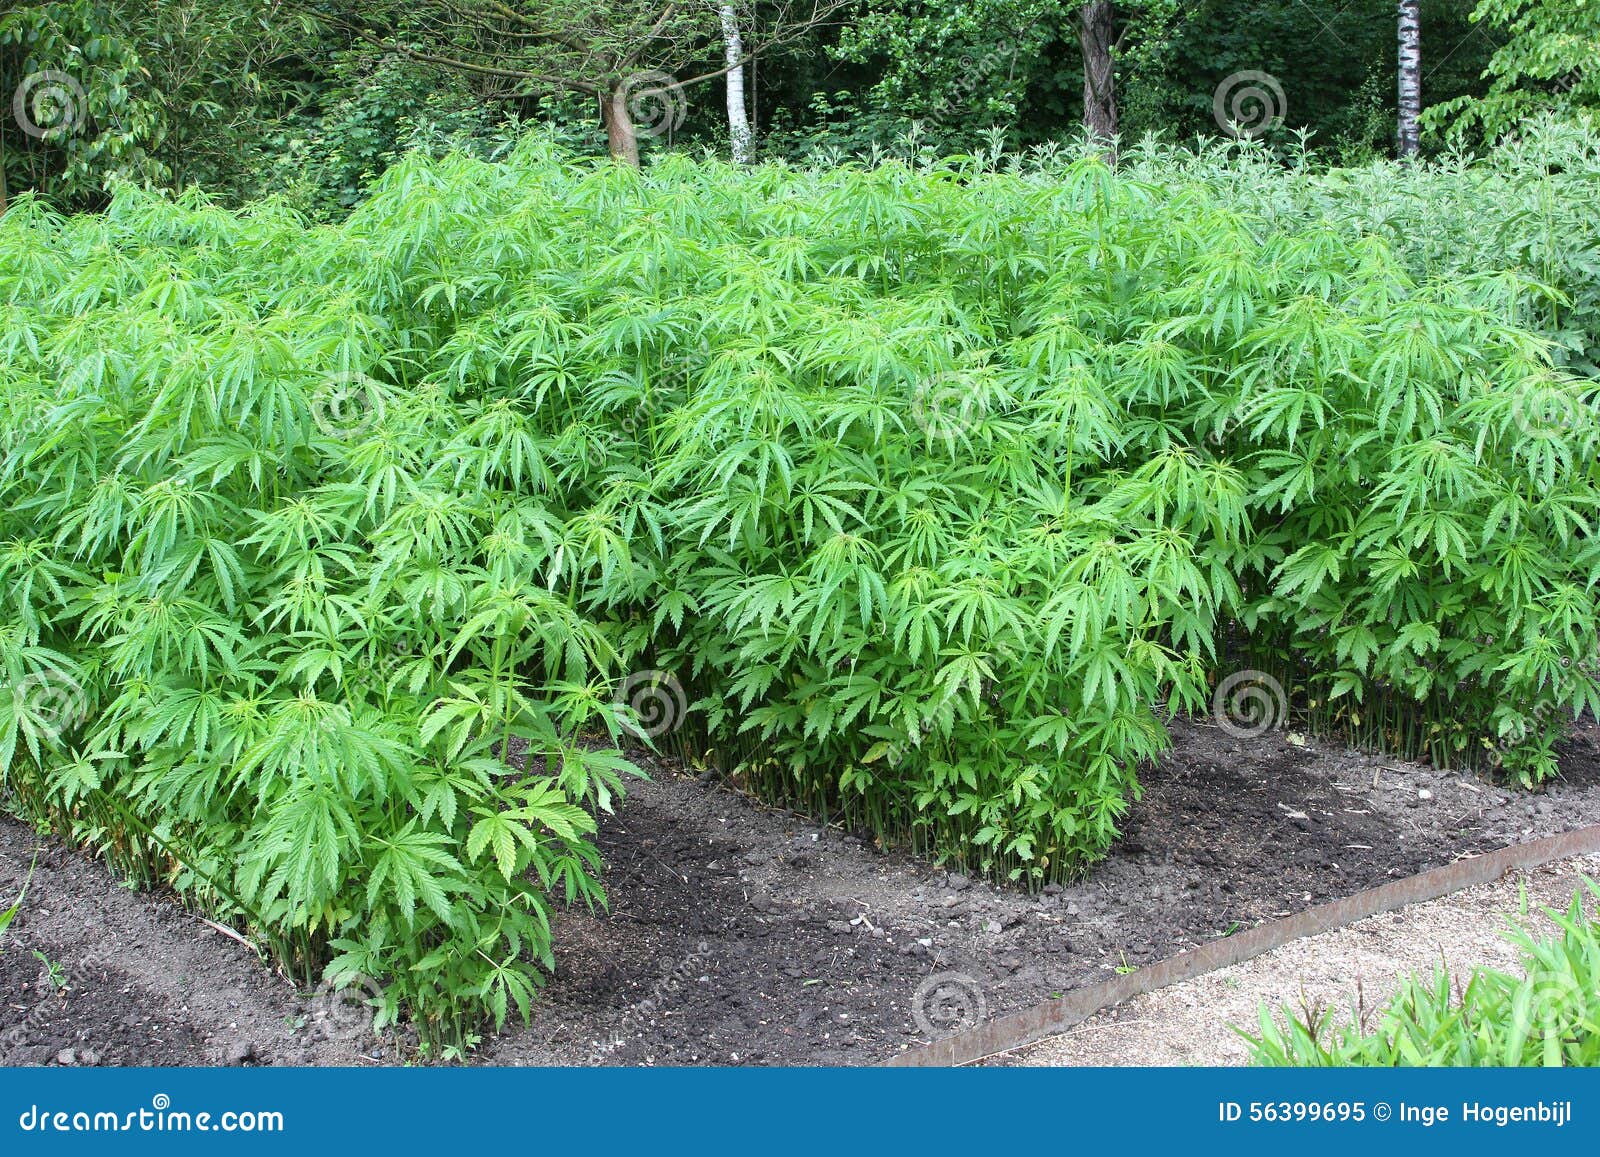 Фото плантации марихуаны последняя посылка с даркнет